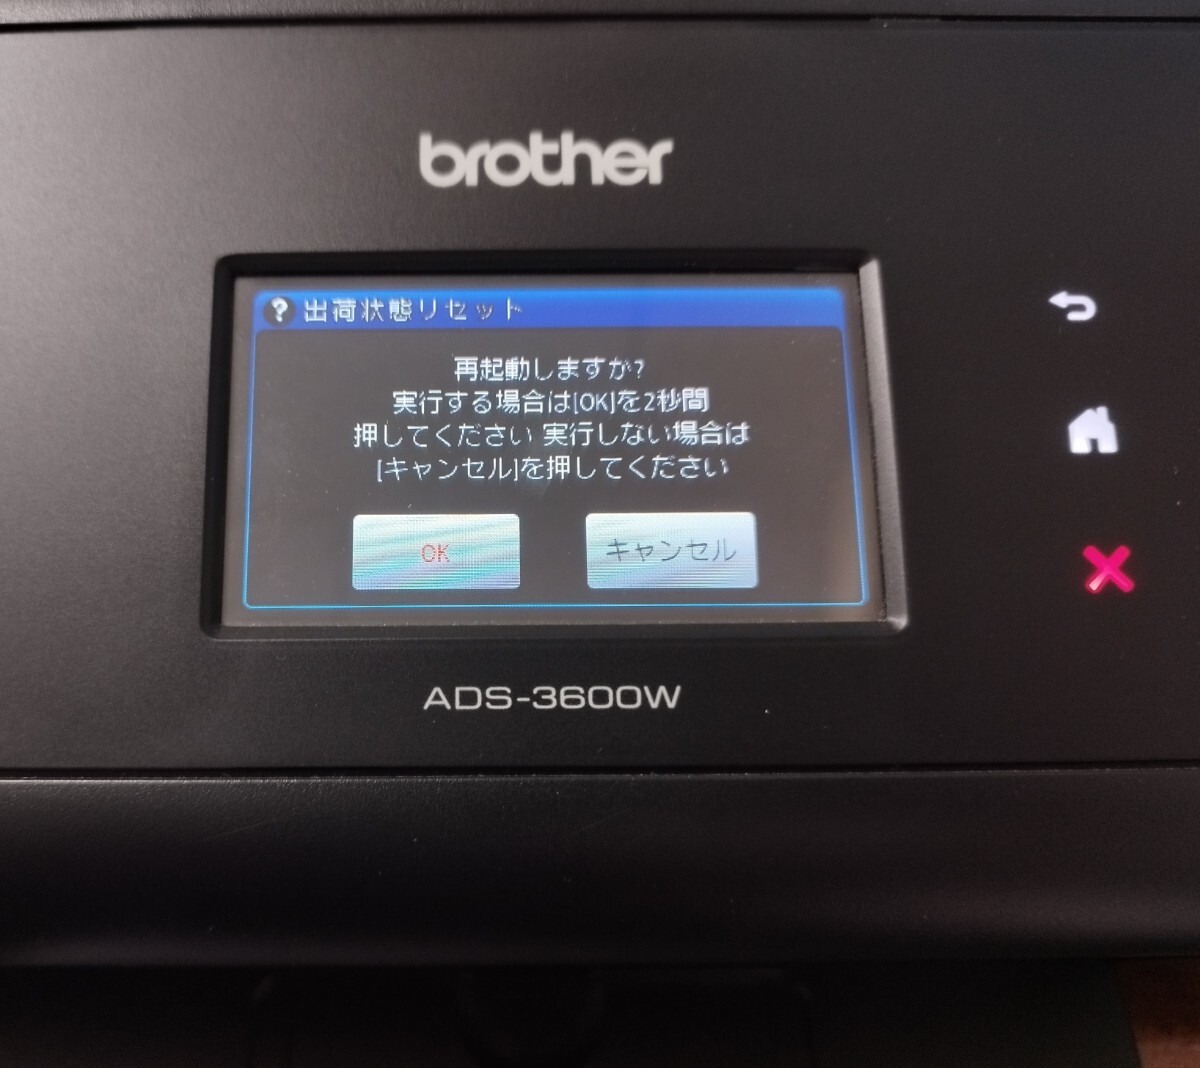 brother сеть сканер ADS-3600W